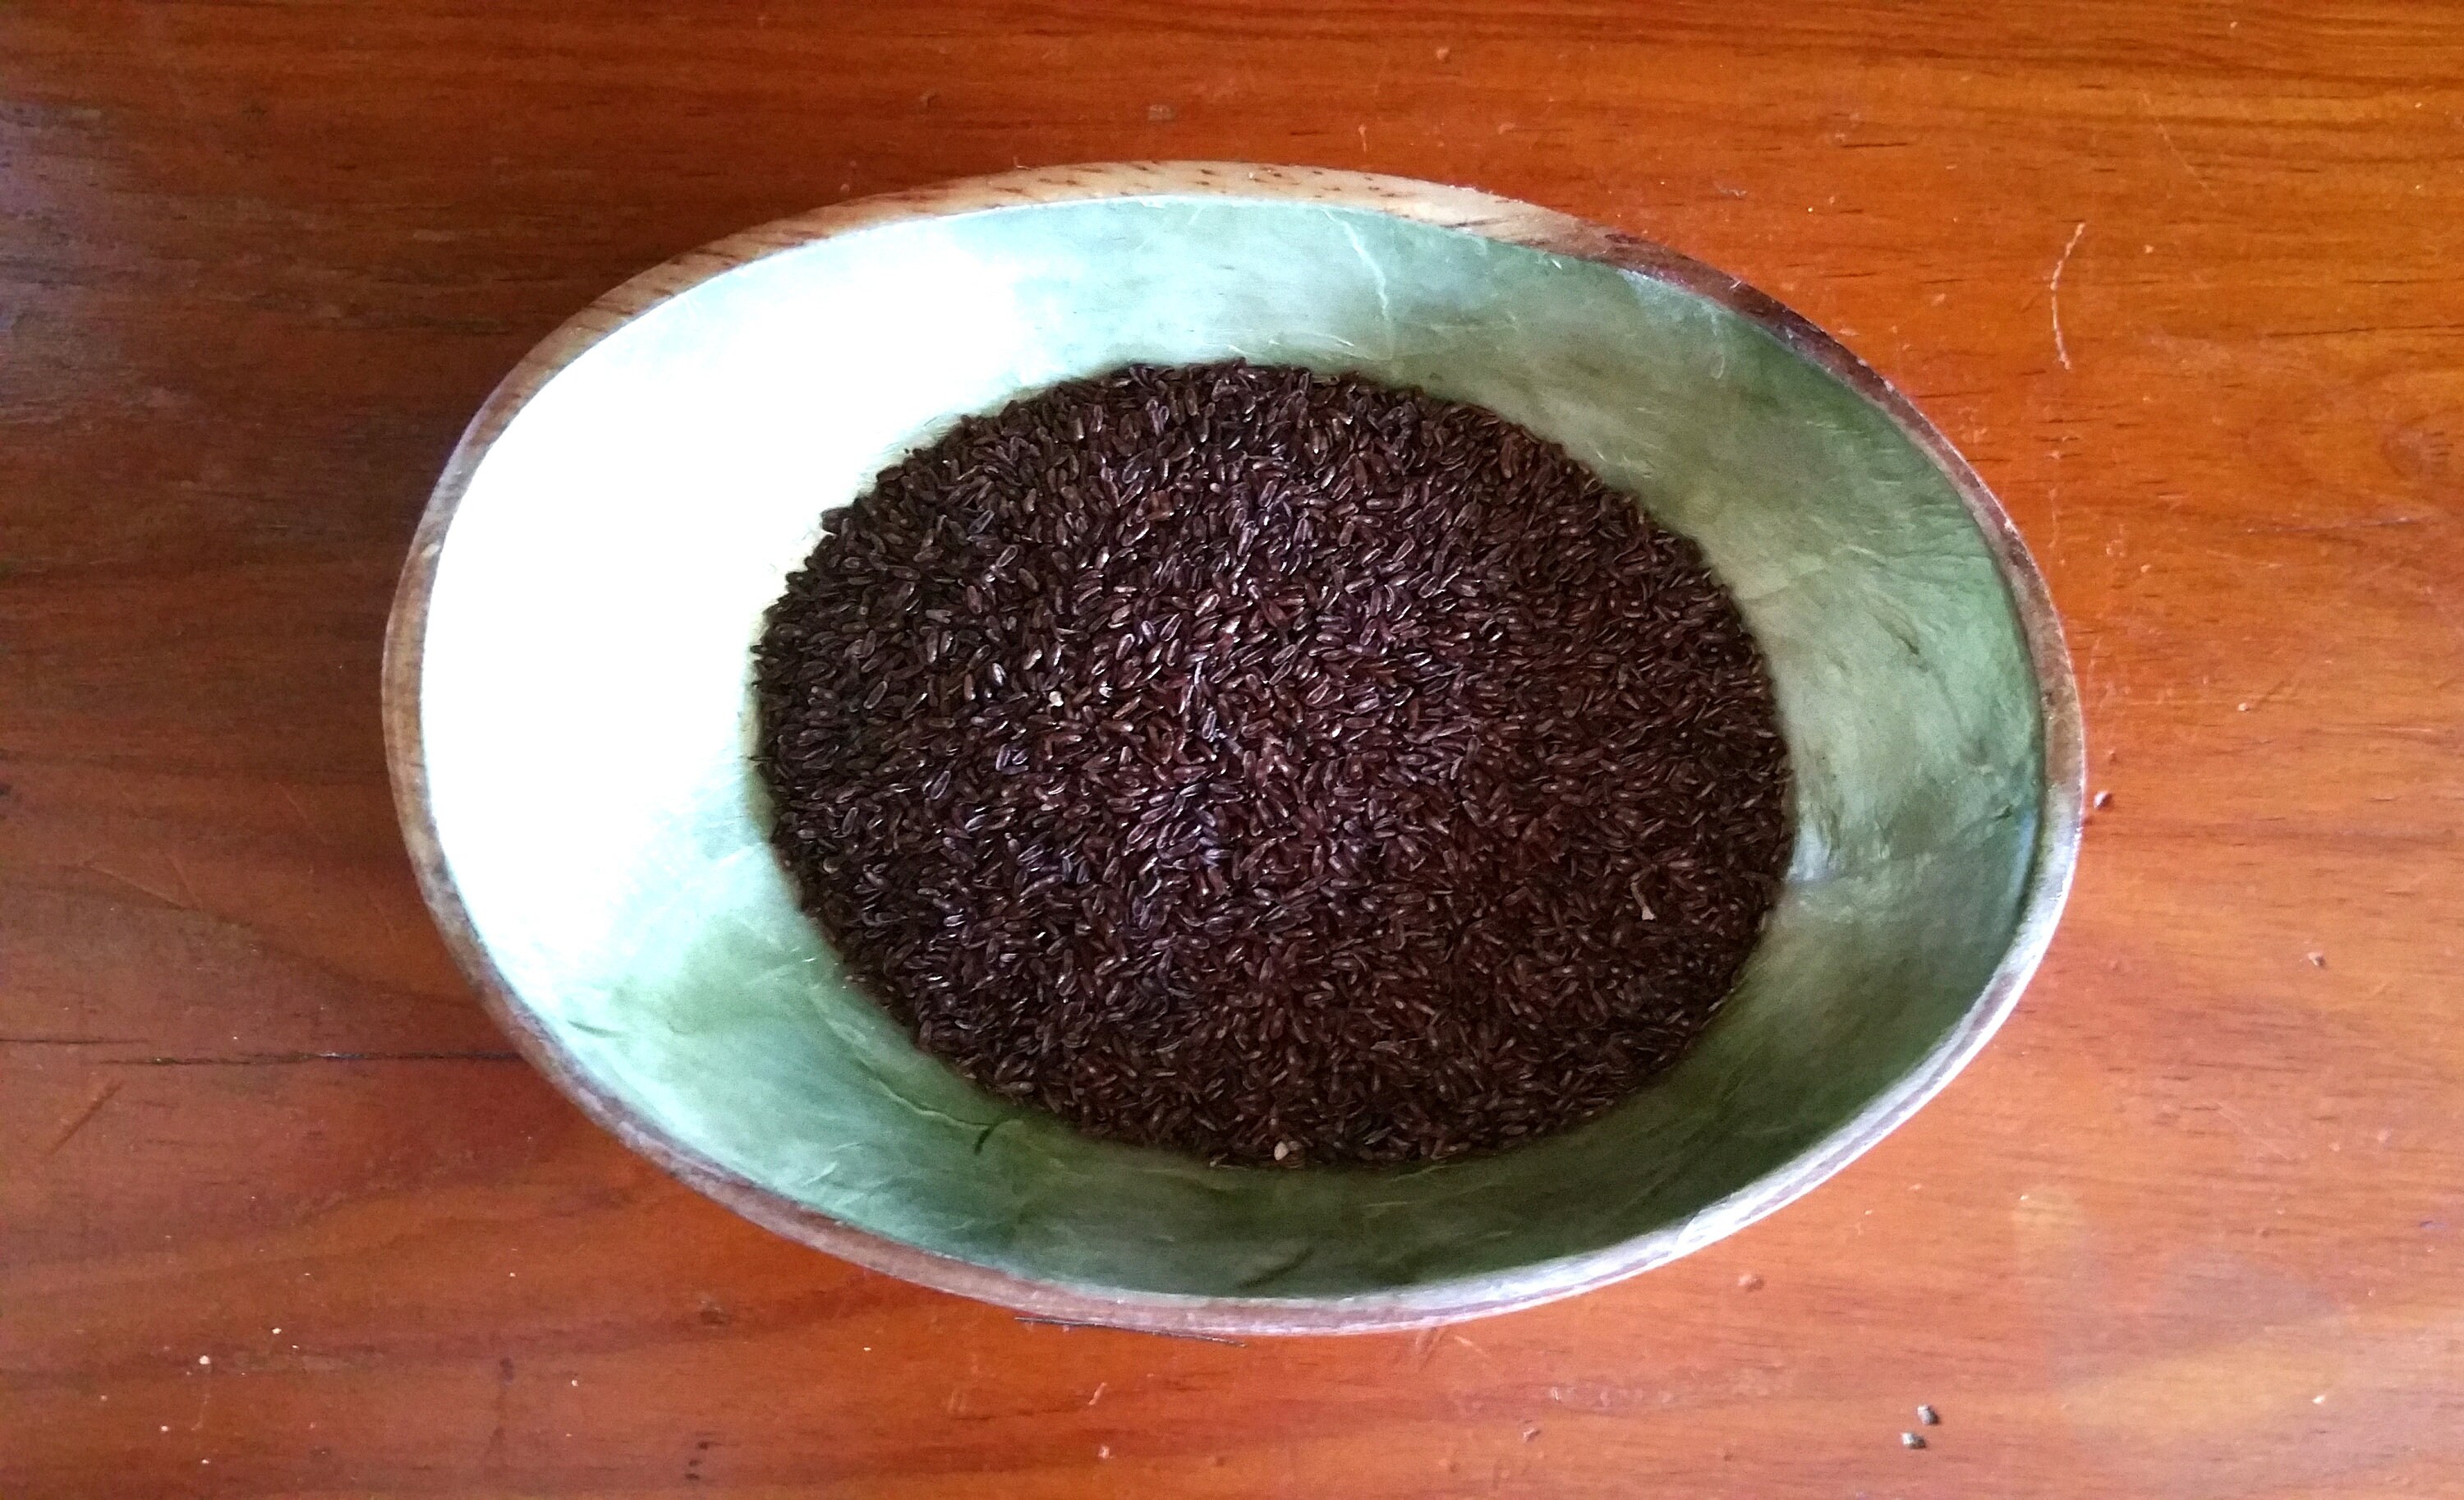 Psyllium brun - Achat, utilisation et bienfaits - L'ile aux épices